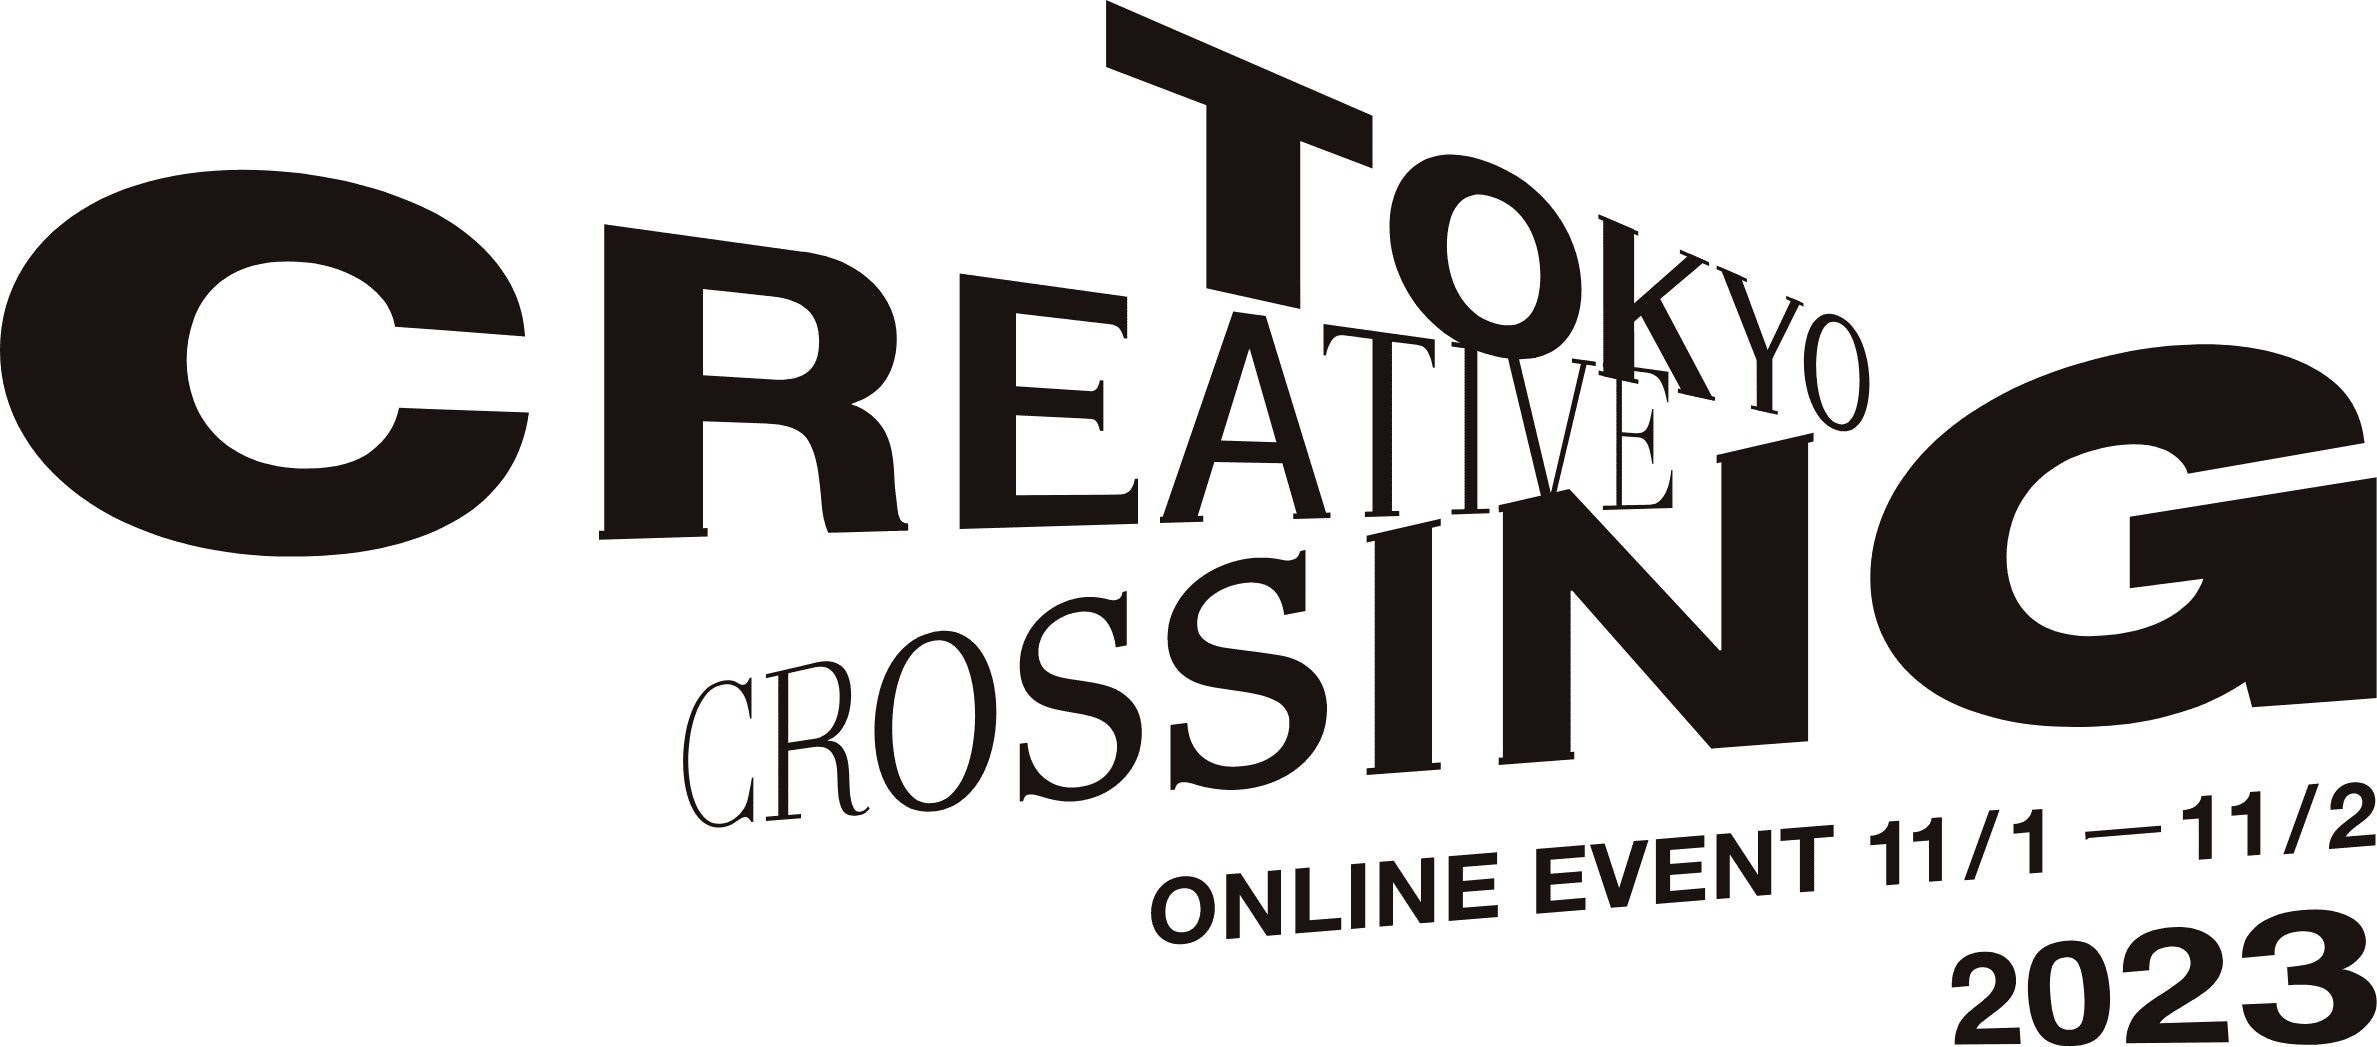 TOKYO CREATIVE CROSSING ONLINE EVENT 11/1 - 11/2 2023